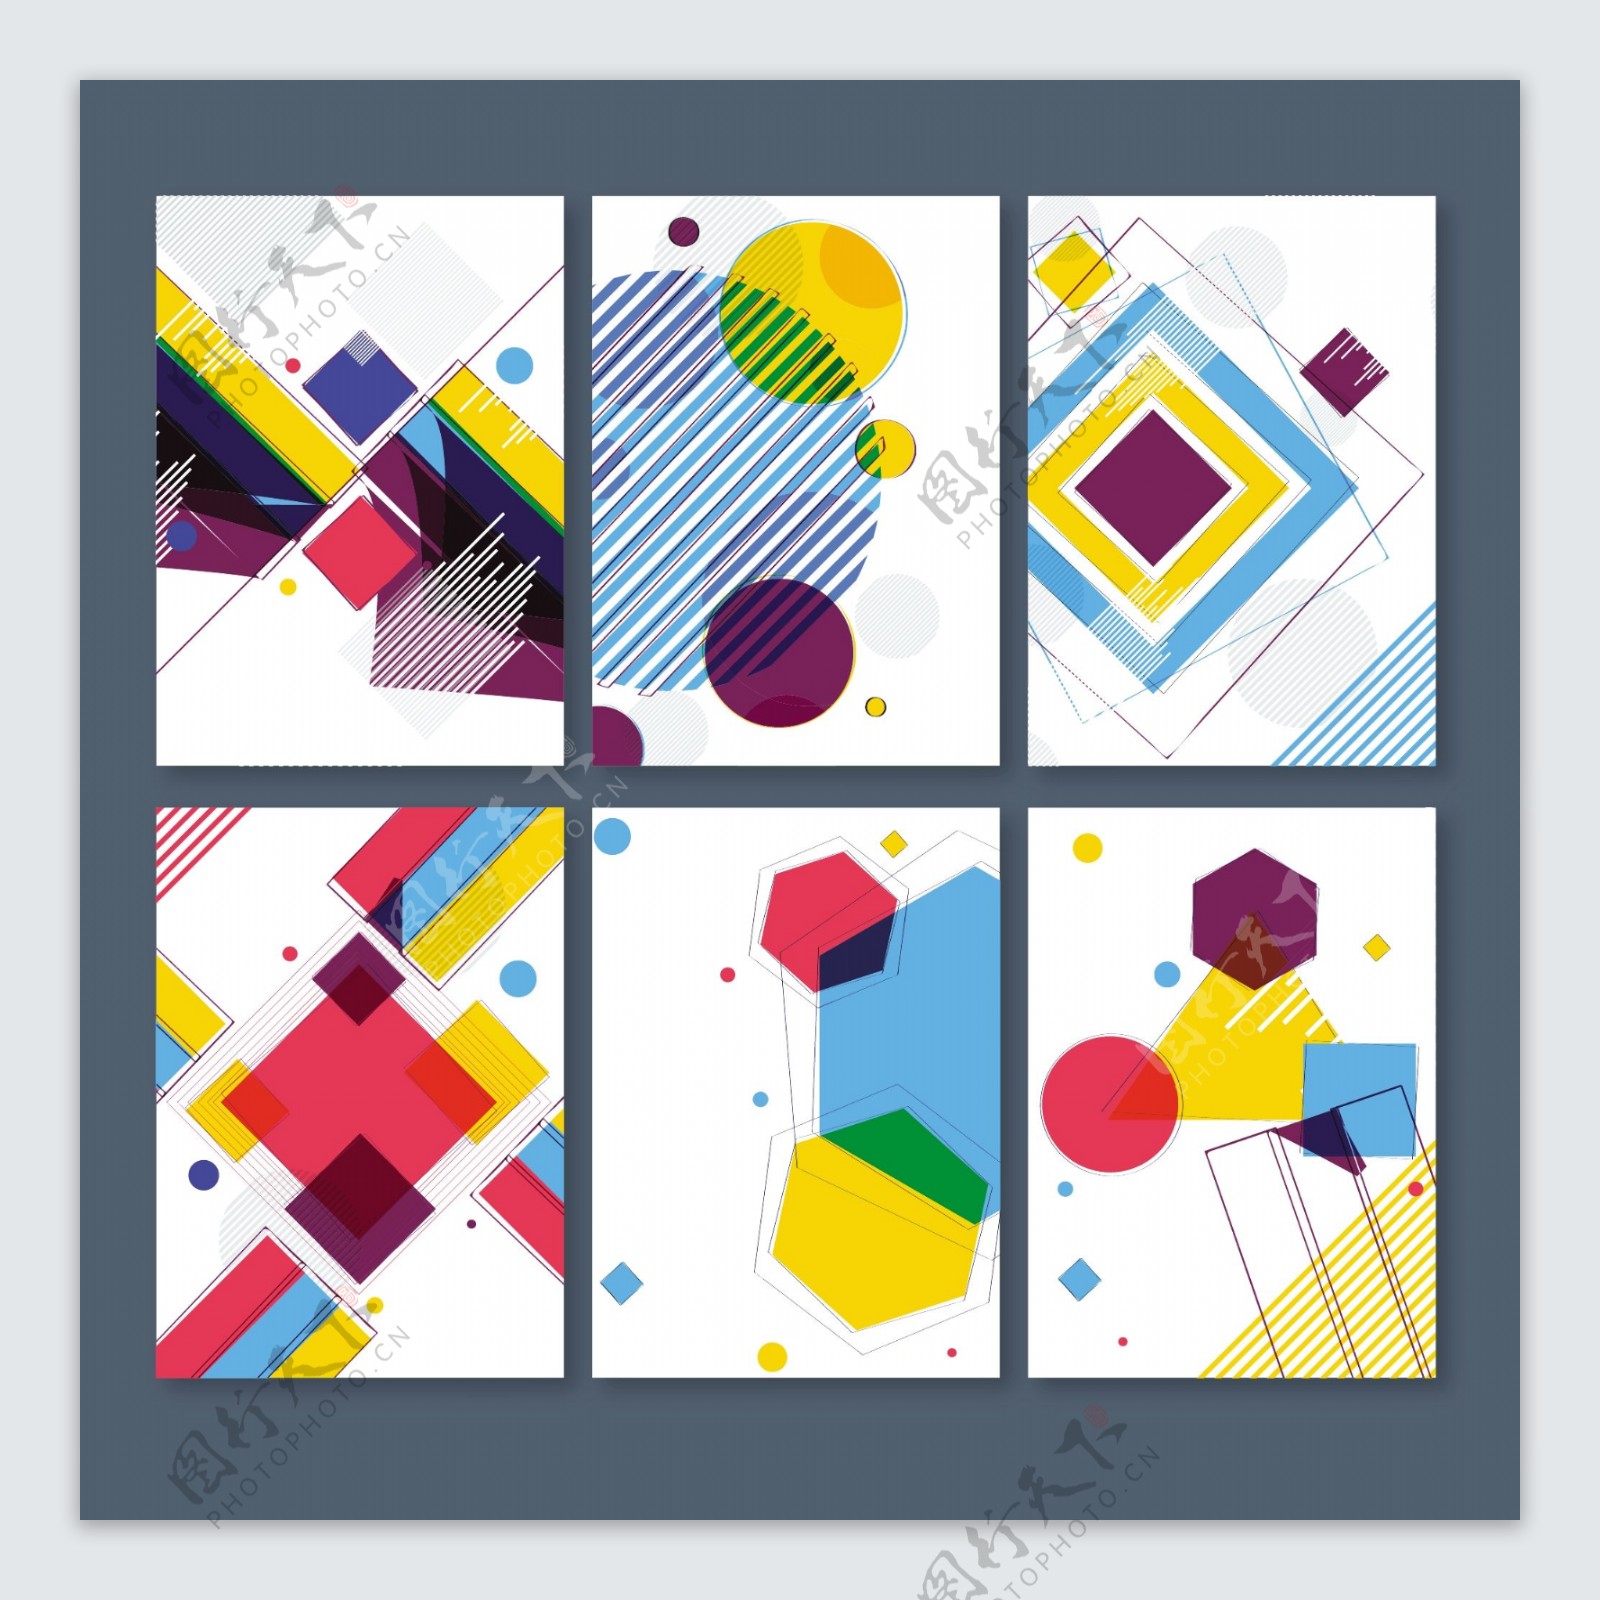 六张形状多样的彩色卡片